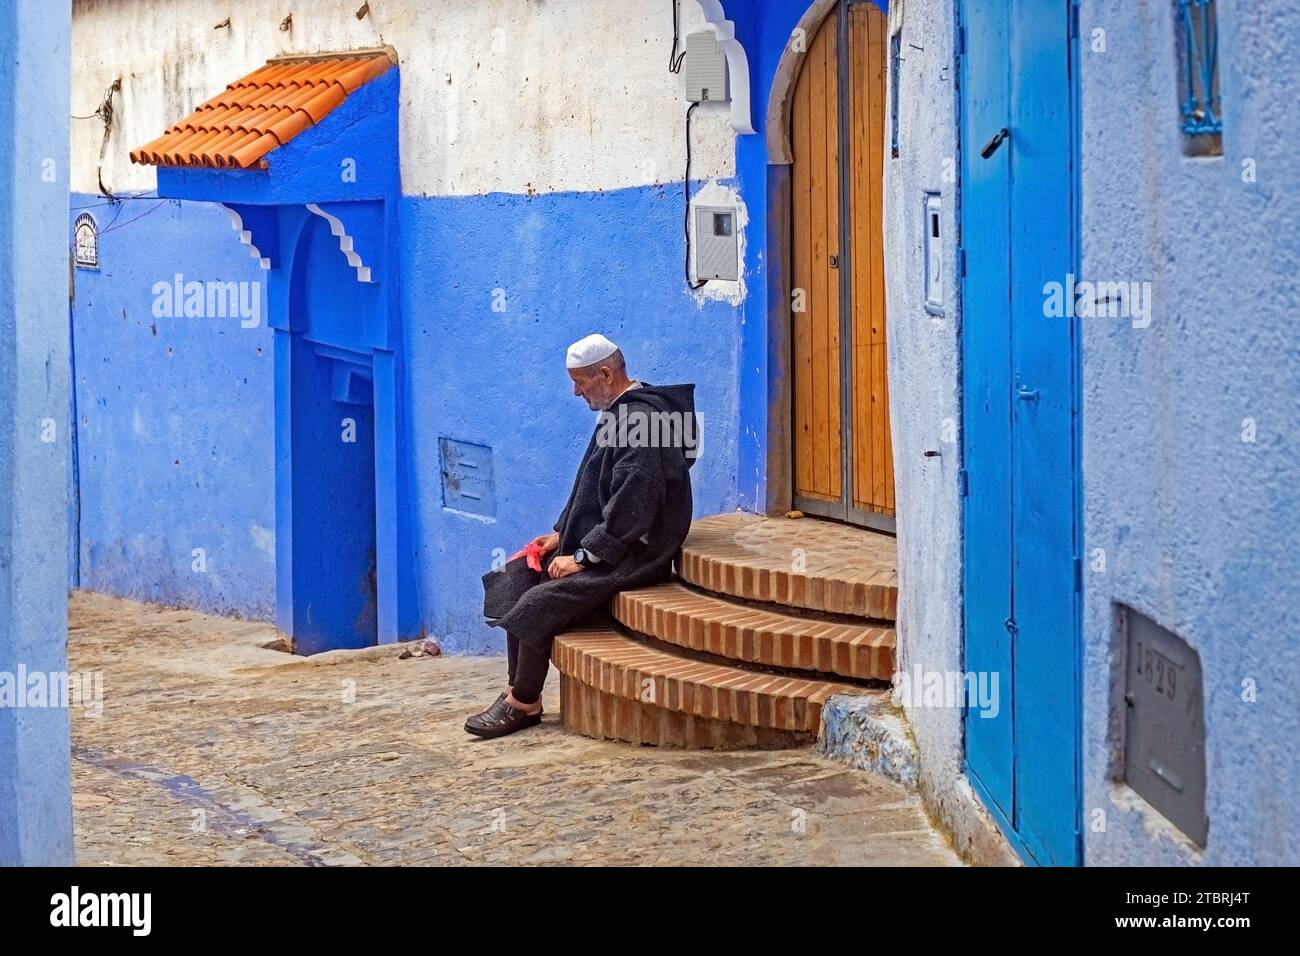 Uomo musulmano che indossa la tradizionale djellaba nel vicolo con case e porte blu nella medina / centro storico della città di Chefchaouen / Chaouen, Marocco Foto Stock